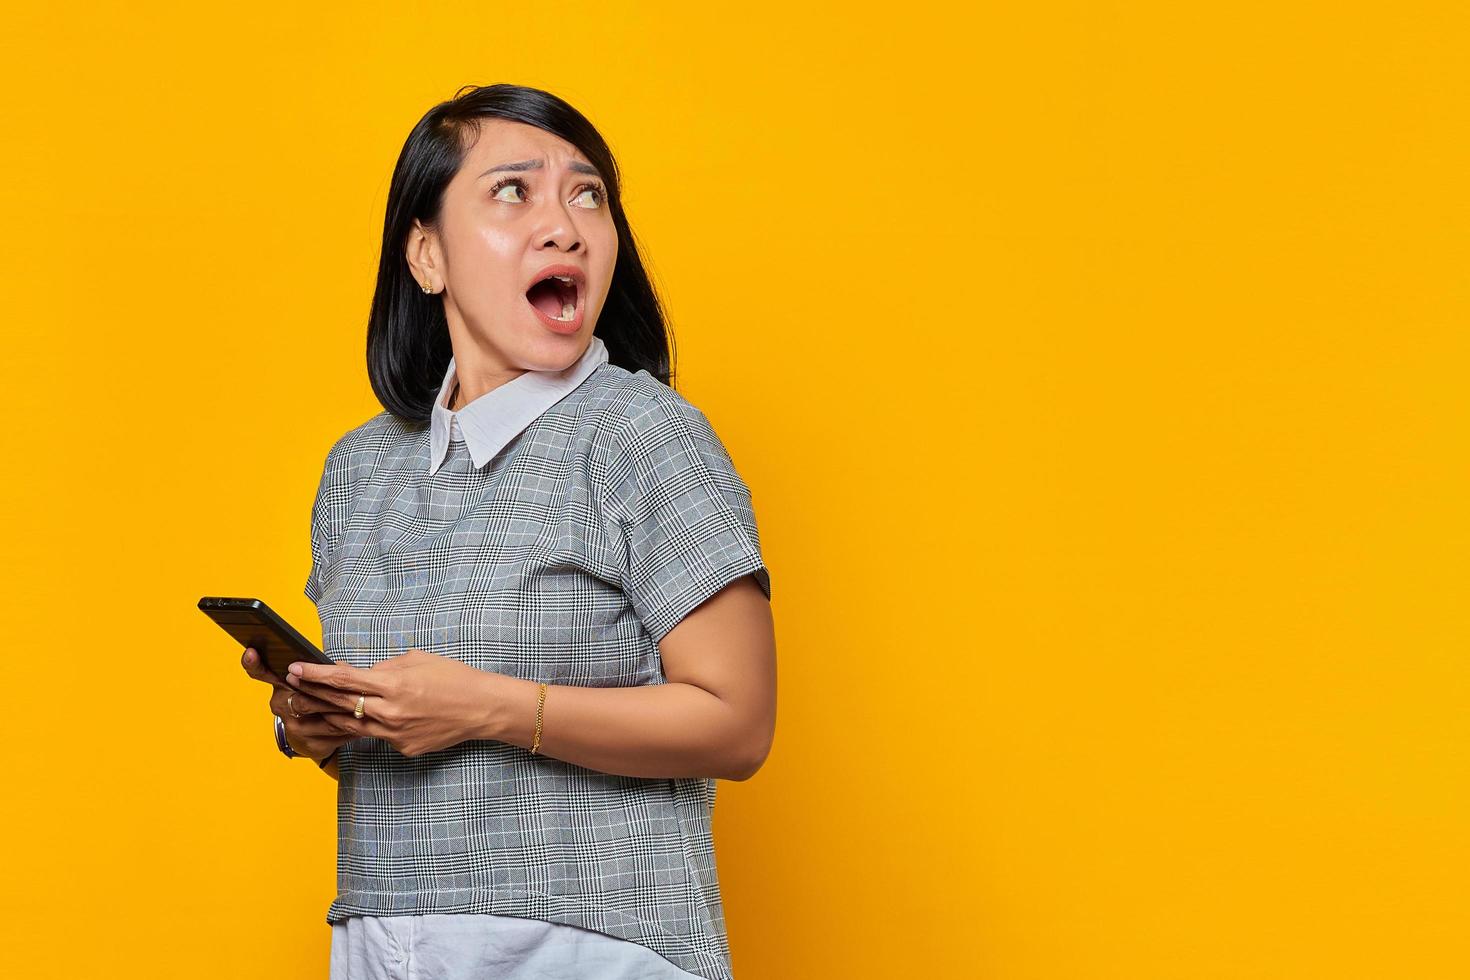 porträtt av chockad ung asiatisk kvinna som håller mobiltelefon och tittar åt sidan på gul bakgrund foto